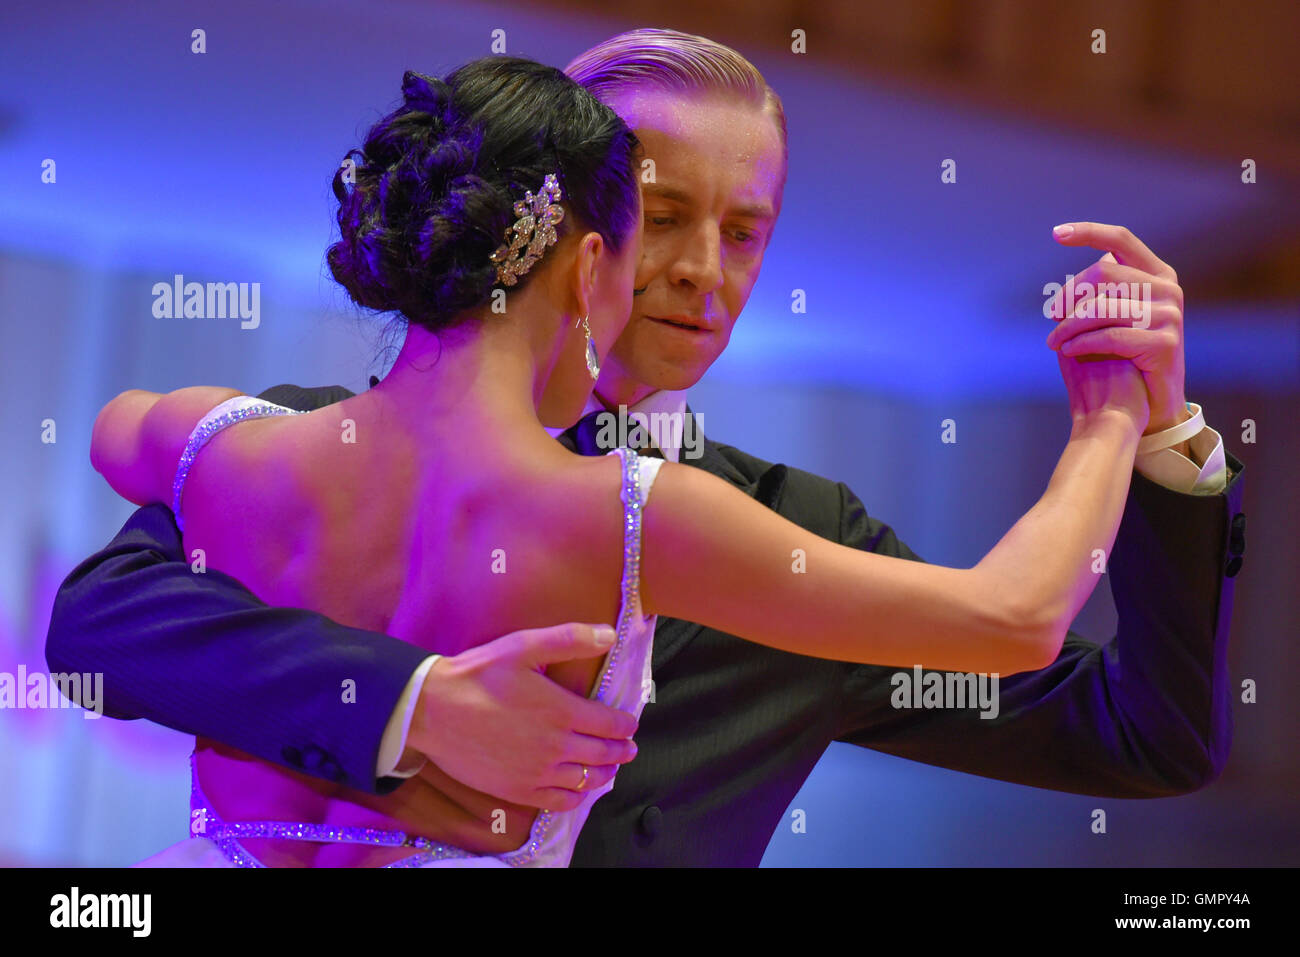 Buenos Aires, Argentina - 22 Ago 2016: Pareja toma parte en la ronda del Tango, durante la Copa Mundial de Baile de Tango. Foto de stock